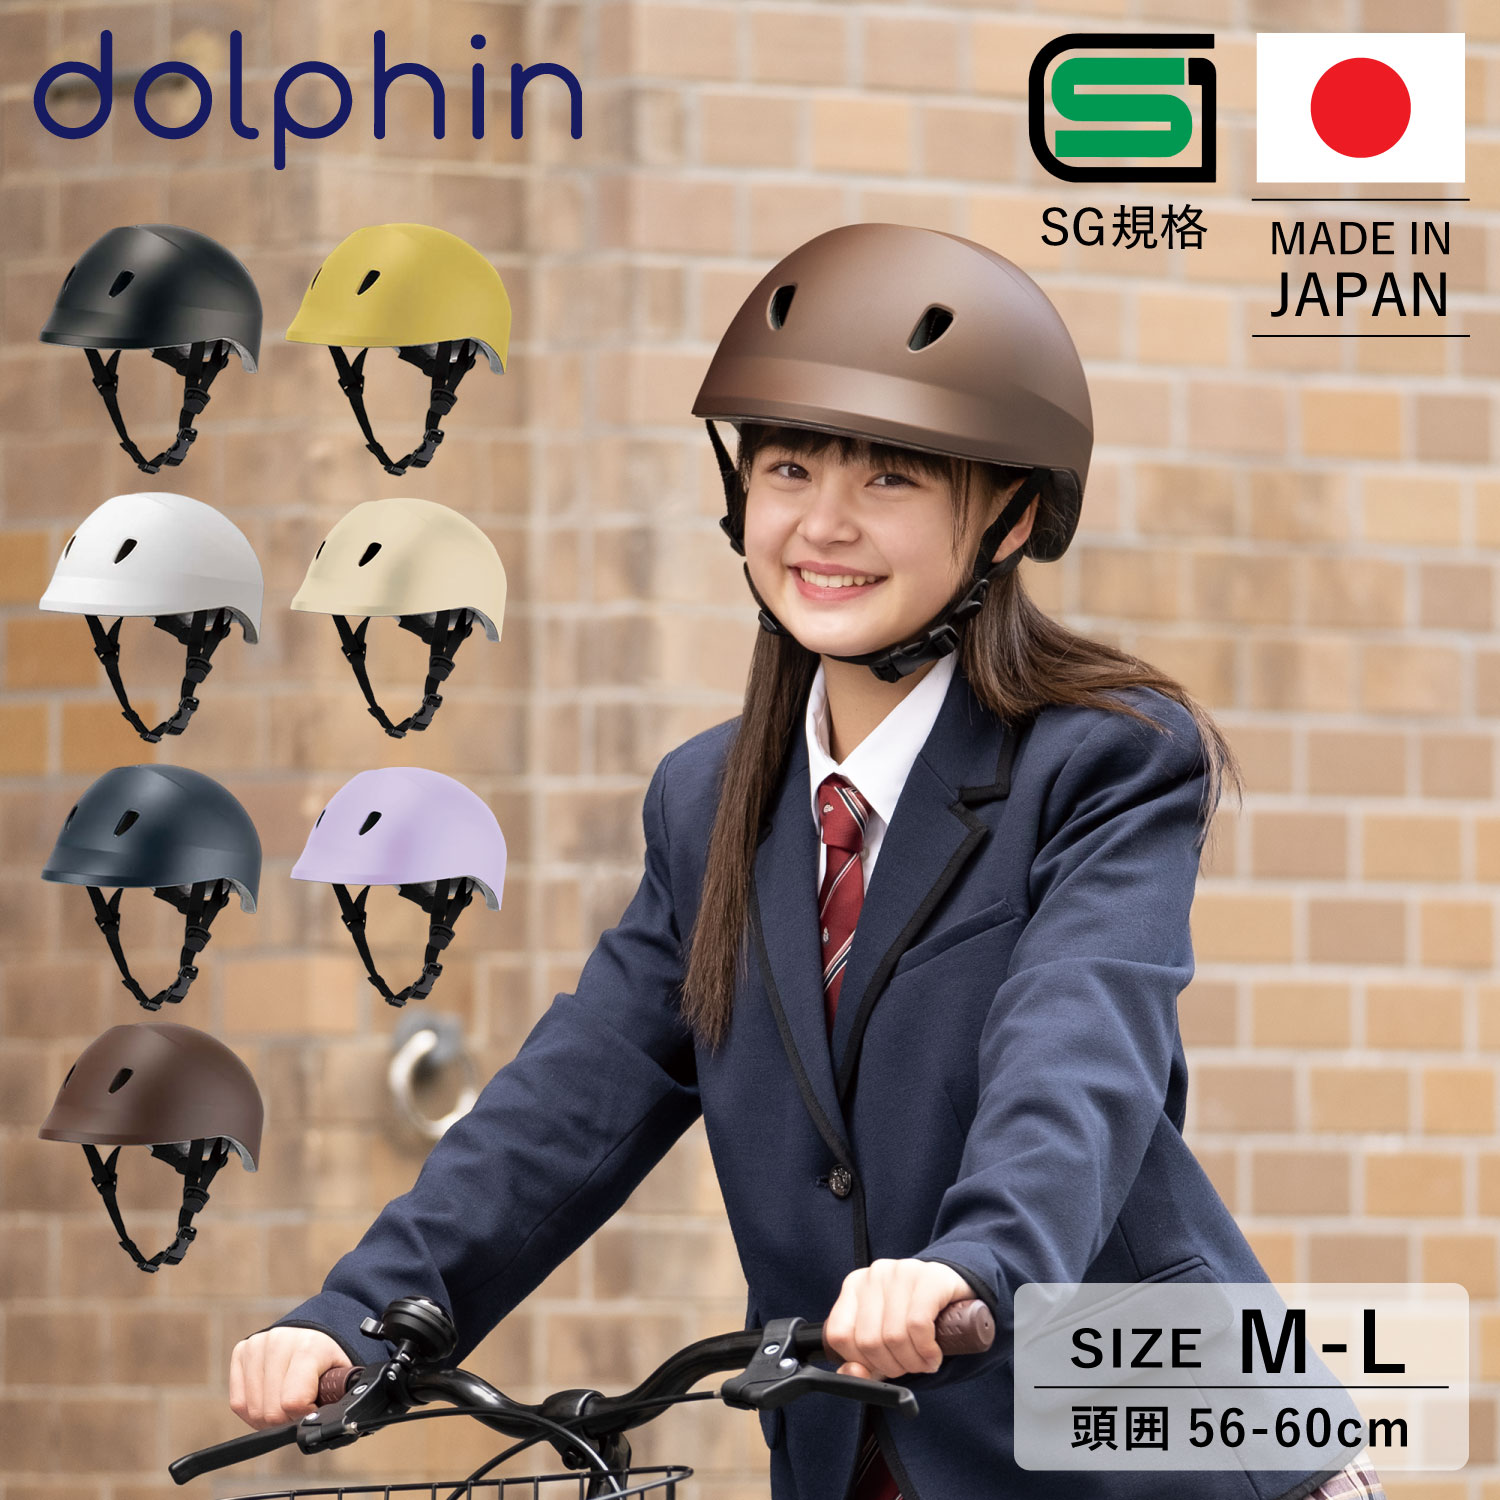 ドルフィン ヘルメット 自転車 子供用 中学生 高校生 Sg規格合格品 サイクリング ジュニア キッズ スクール 通学 女の子 男の子 おしゃれ クミカ工業 Dolphin サイズ調整可能 バイザー付き 日本製 Kg005 高品質新品